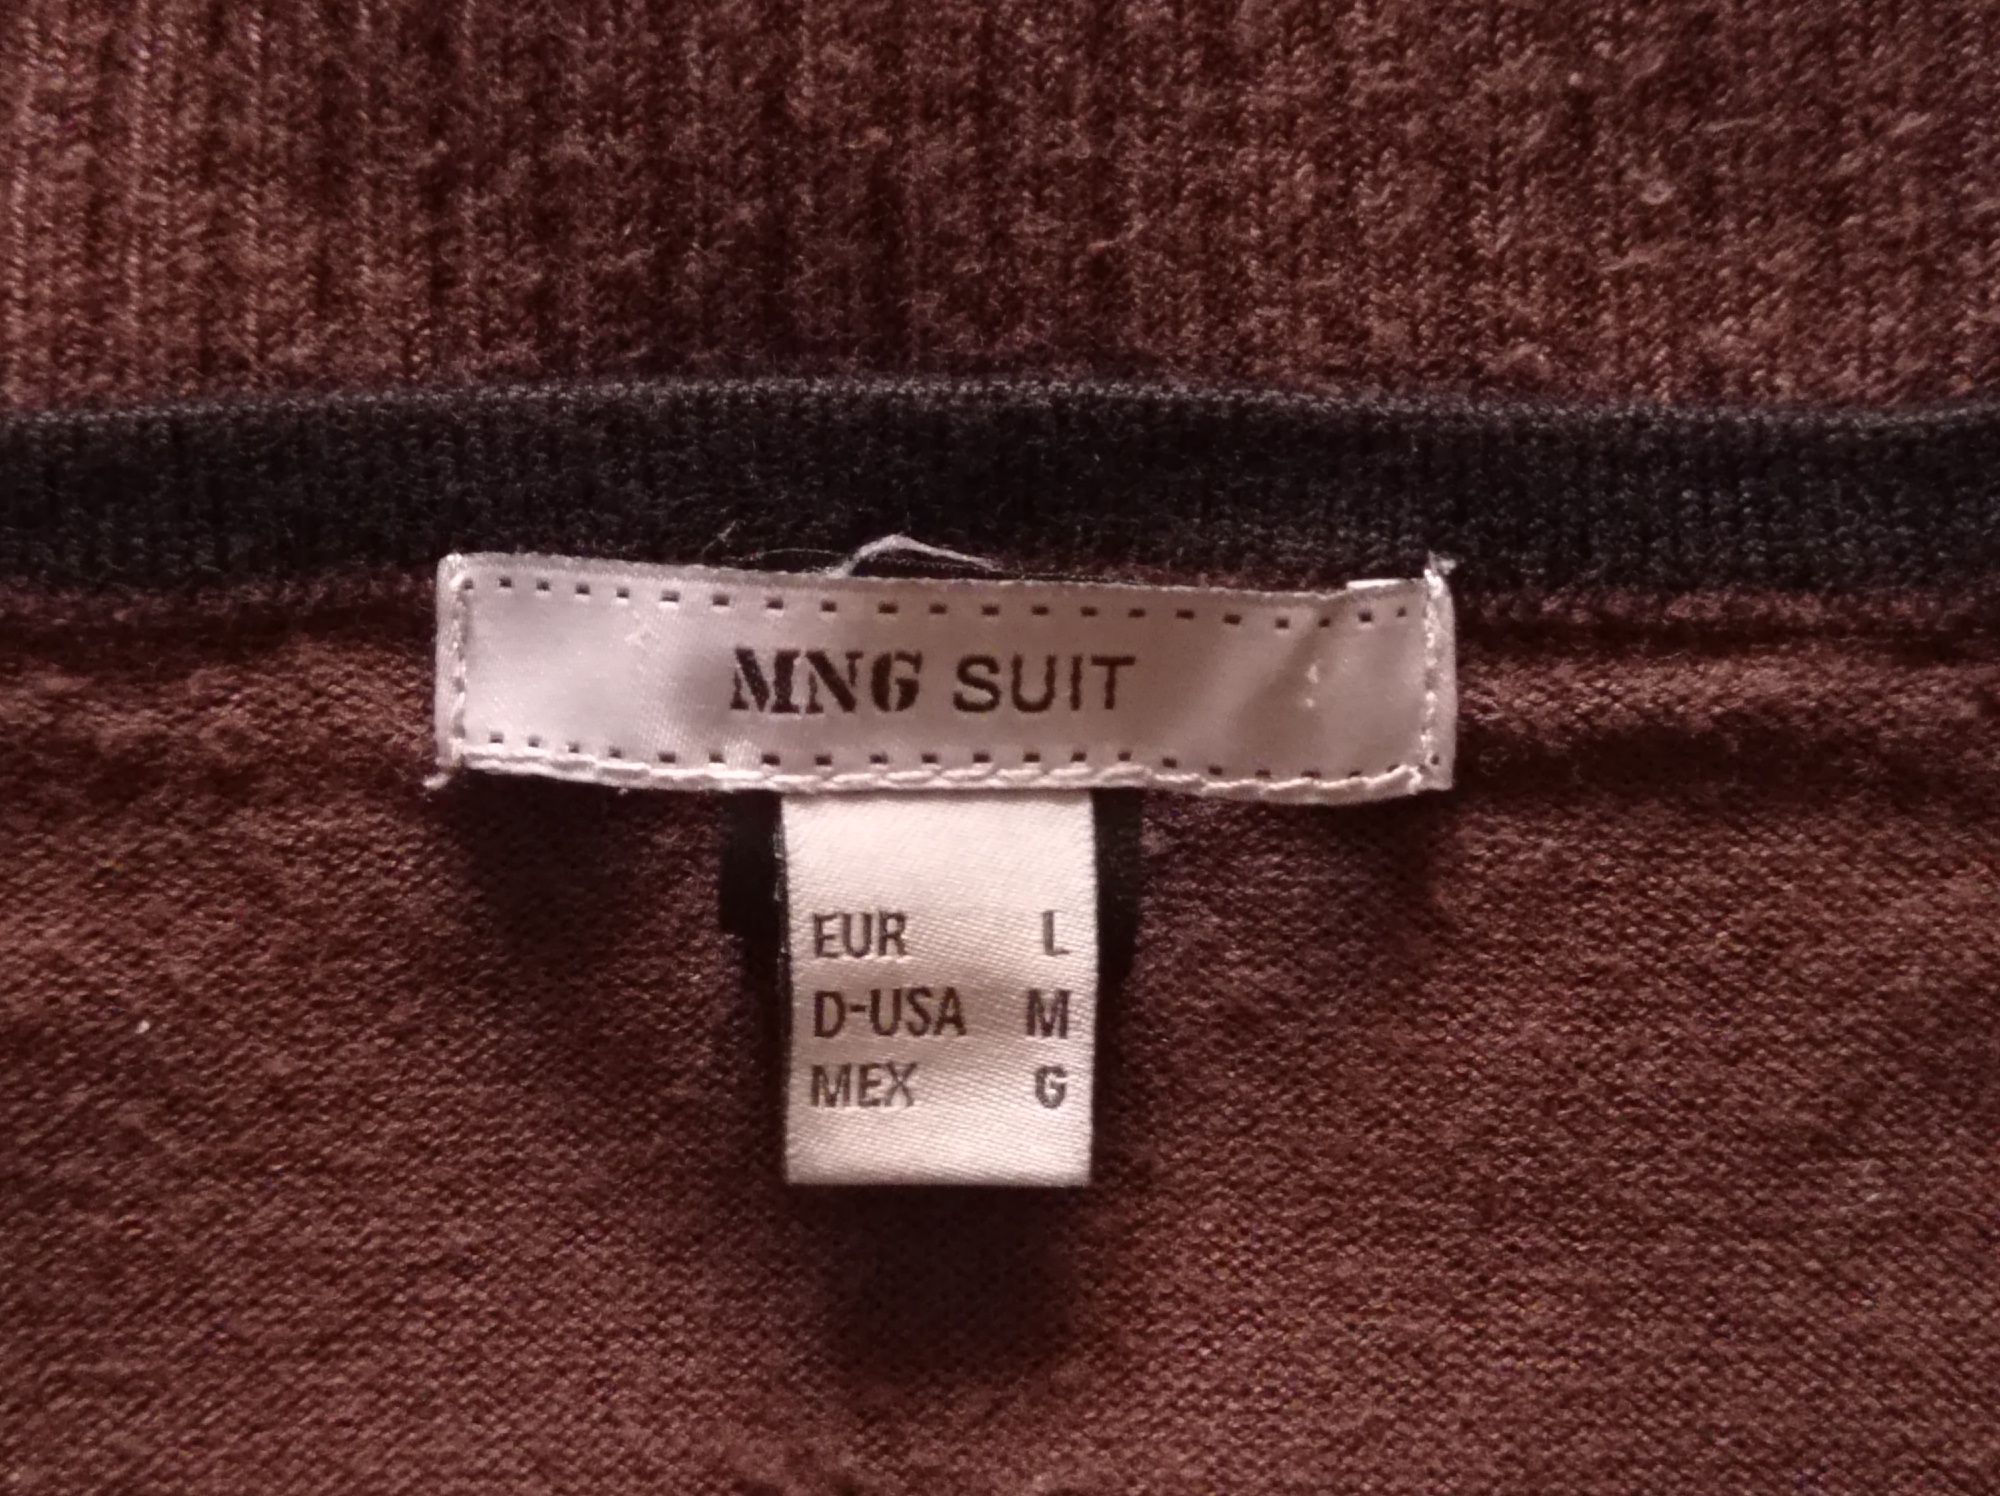 MNG Suit camisola castanha